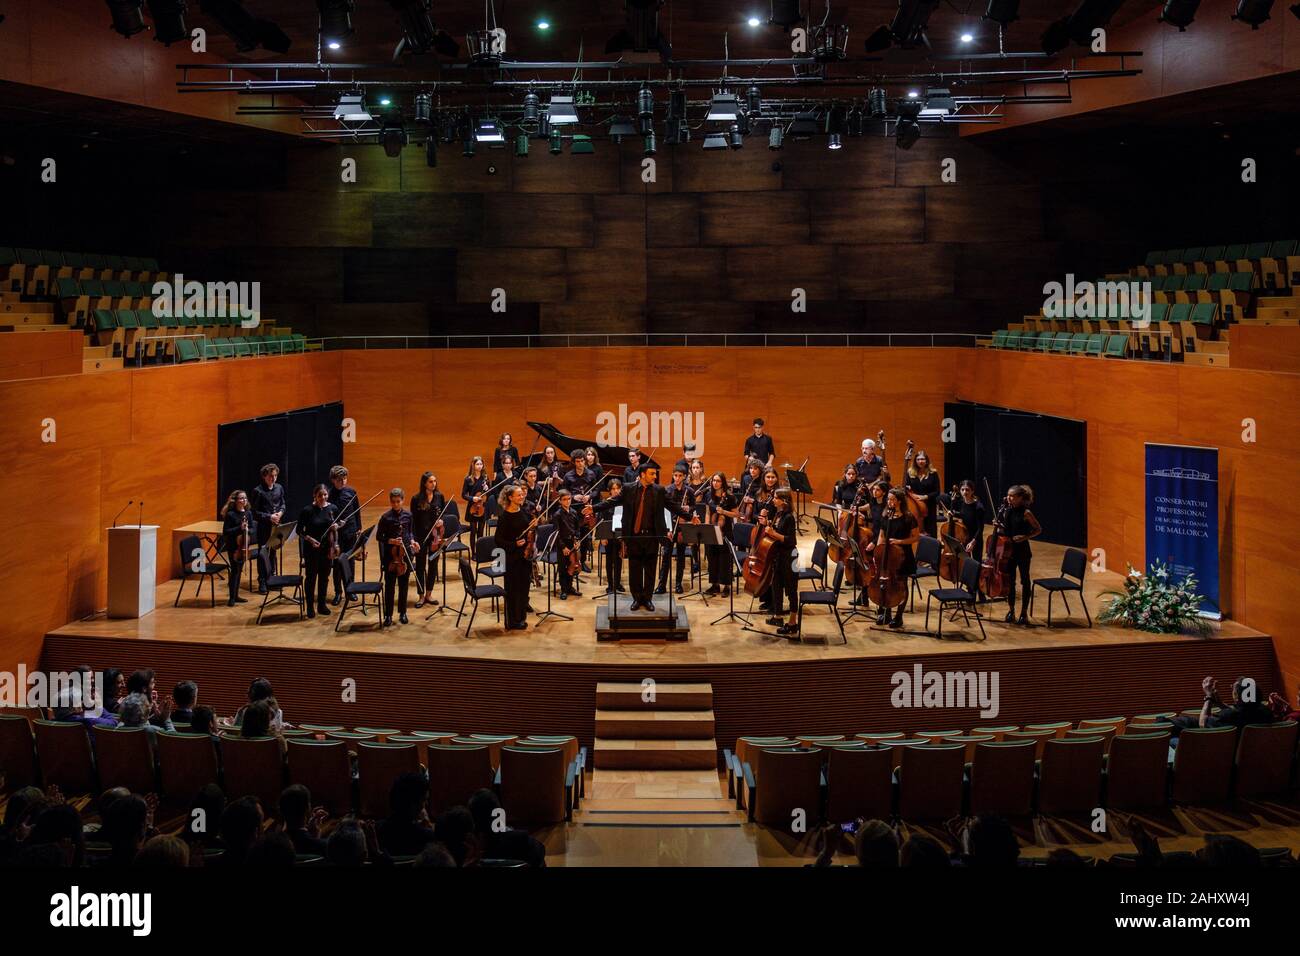 Concierto en el Conservatorio de Palma, Mallorca, Islas Baleares, España. Foto de stock